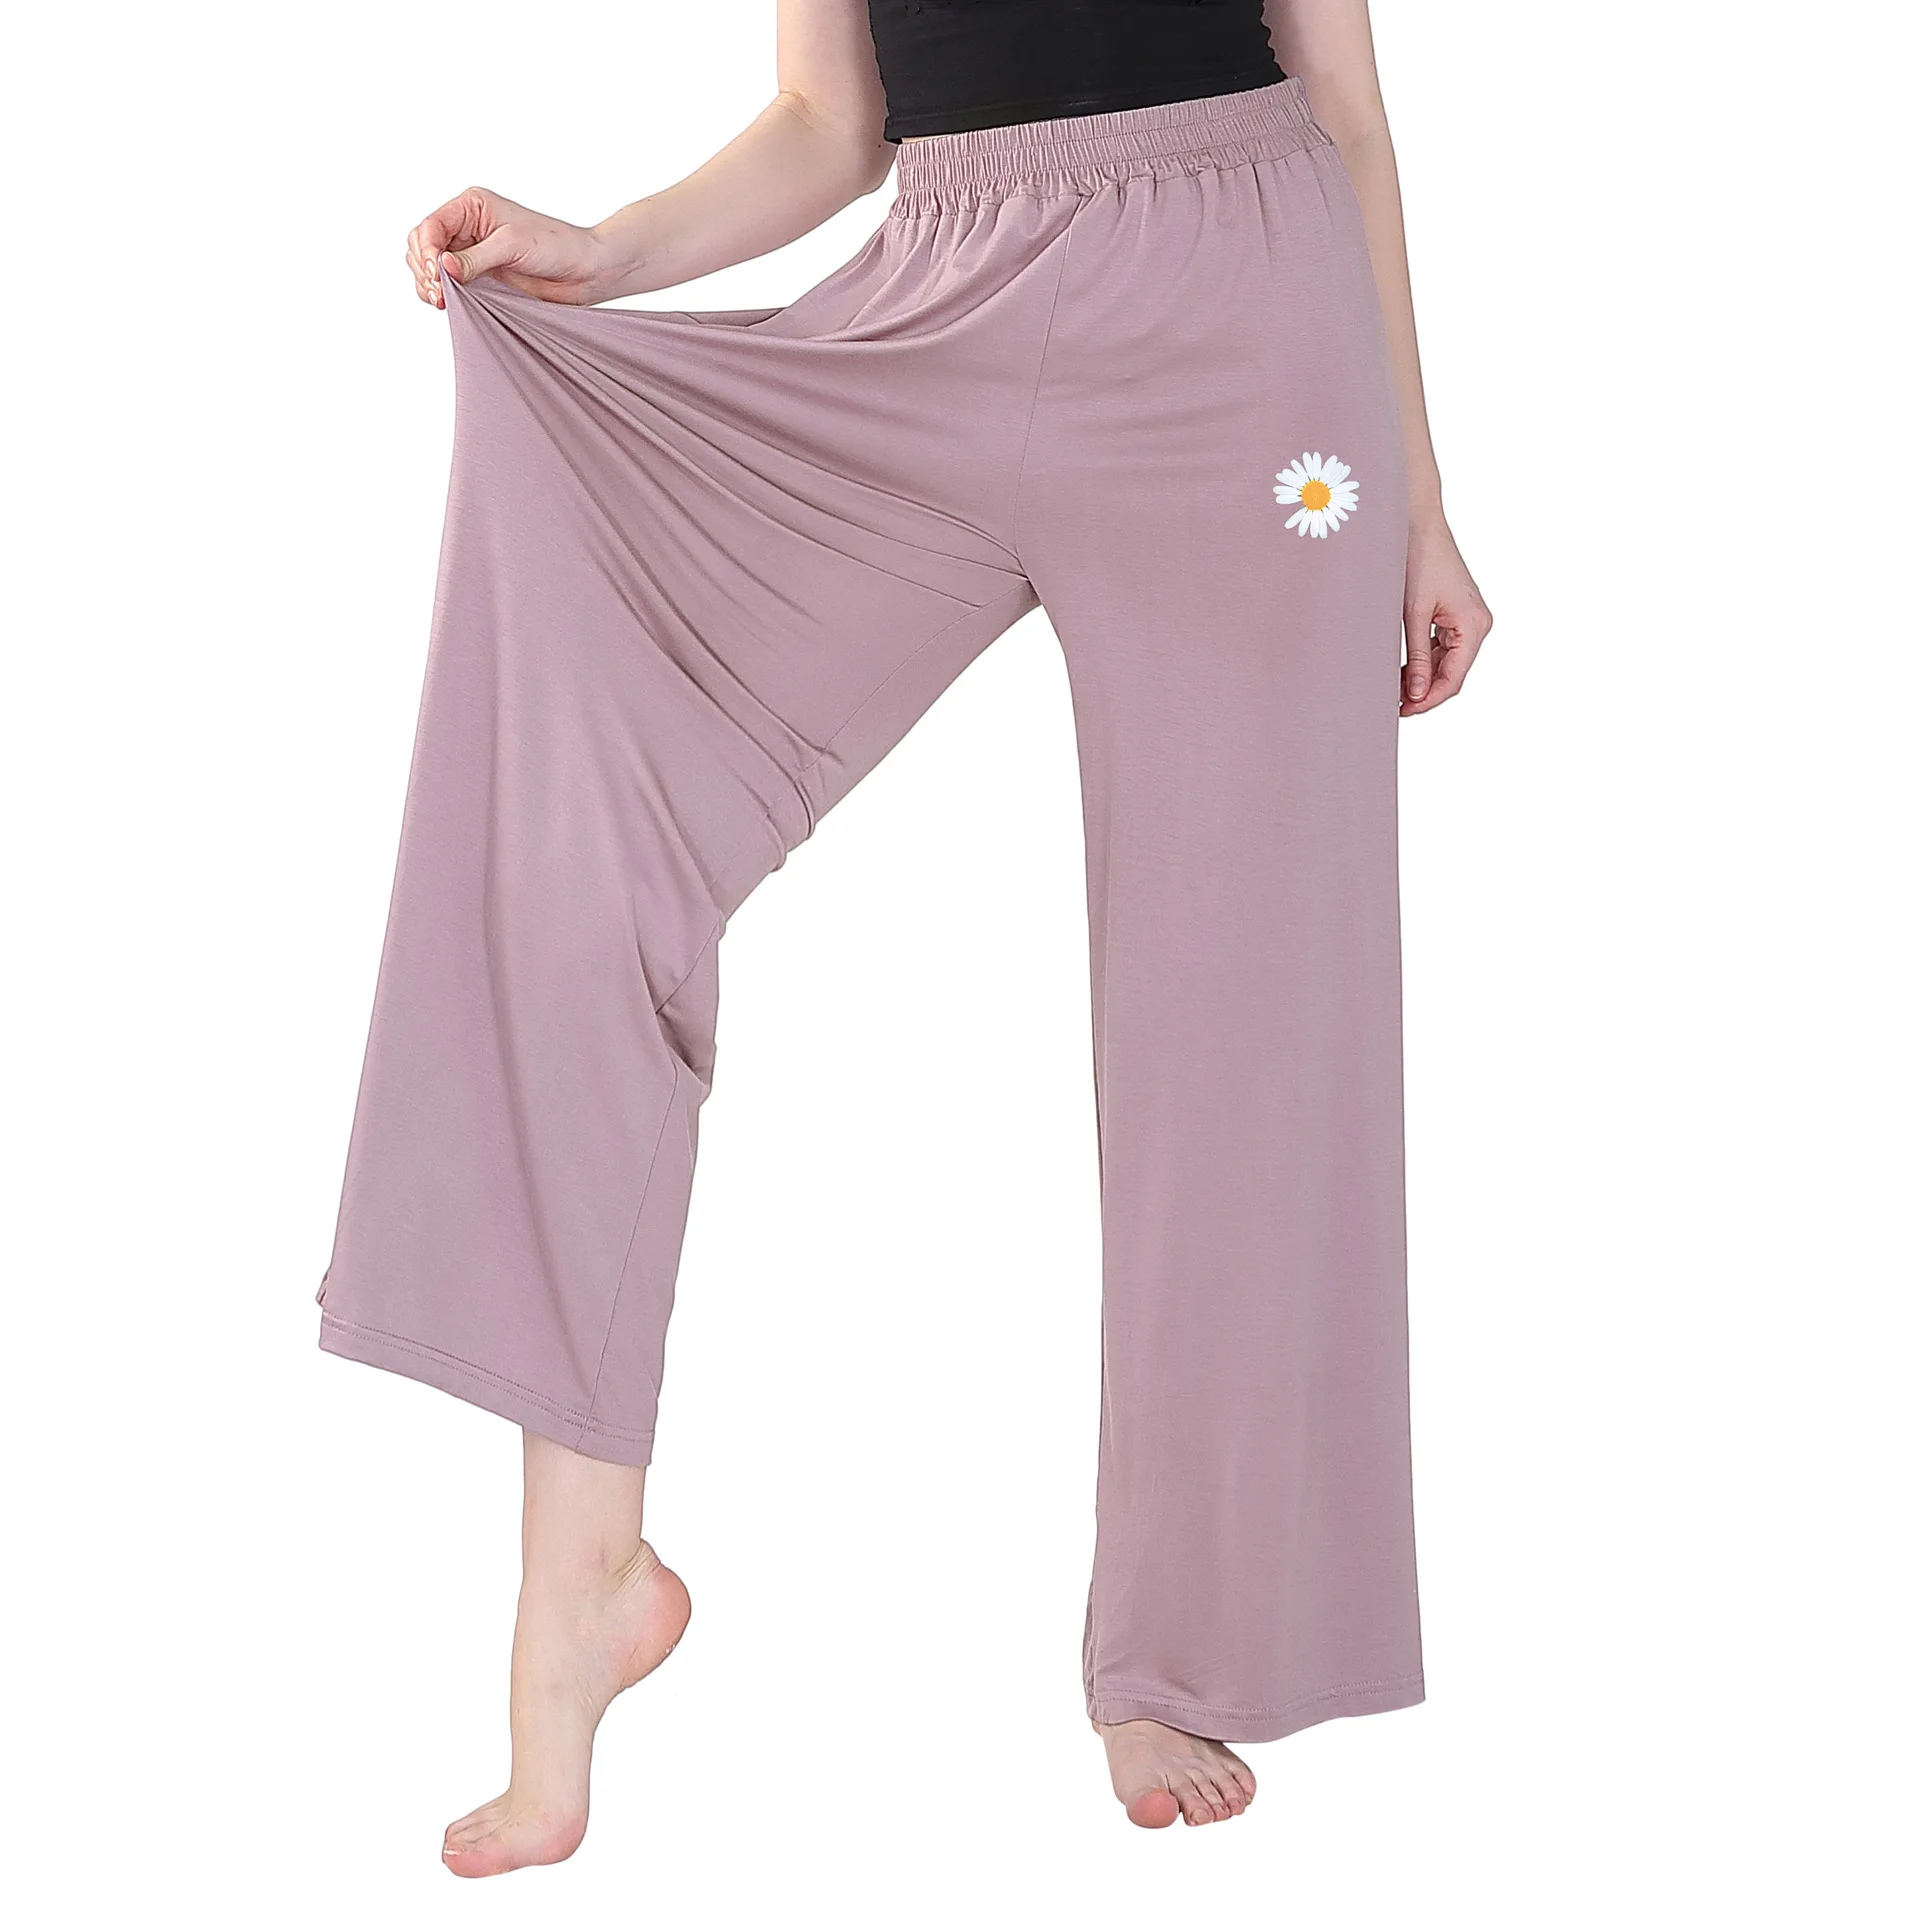 

Штаны пижамные женские домашние размера плюс 7XL, одежда для сна, свободные удобные брюки с принтом маргариток, повседневные штаны